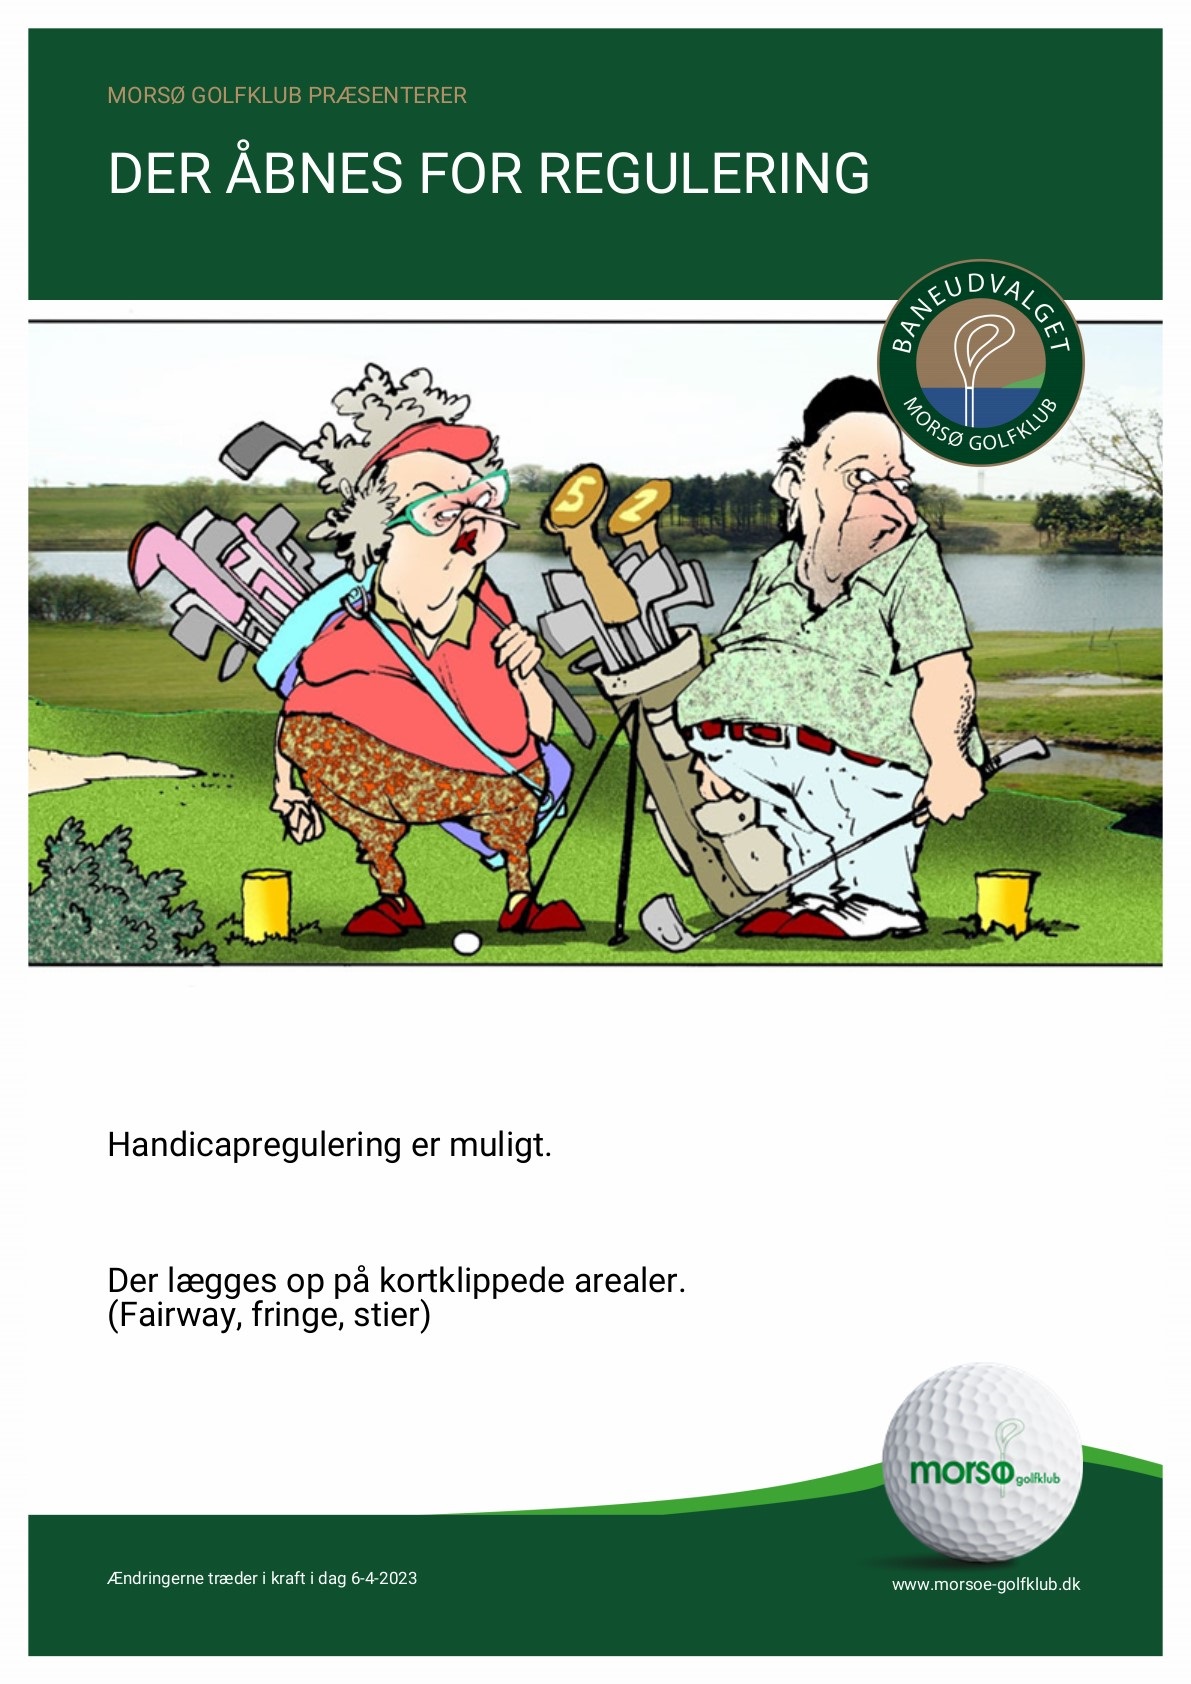 Der Åbnes For Handicapregulering | Morsø Golfklub